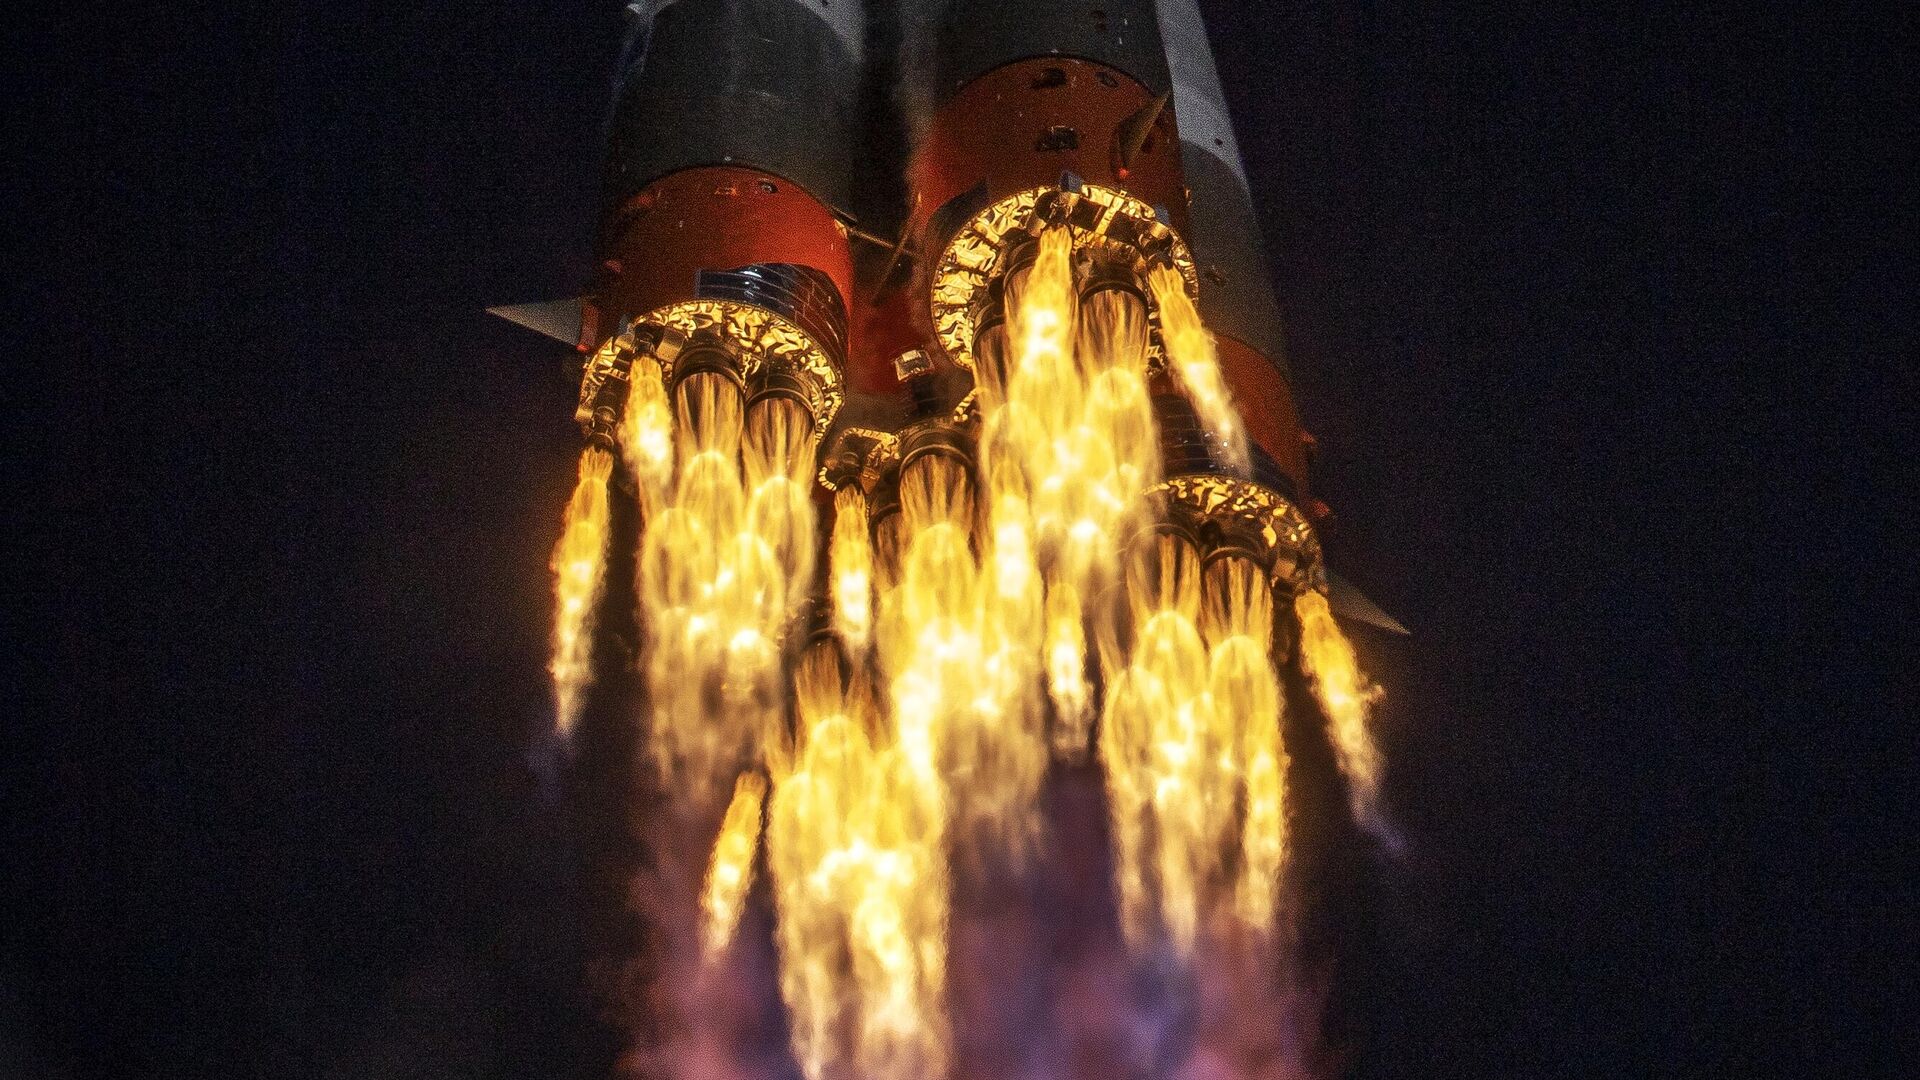 Ракета-носитель Союз-2.1а с транспортным пилотируемым кораблем Союз МС-17 во время запуска со стартовой площадки космодрома Байконур - РИА Новости, 1920, 25.02.2021